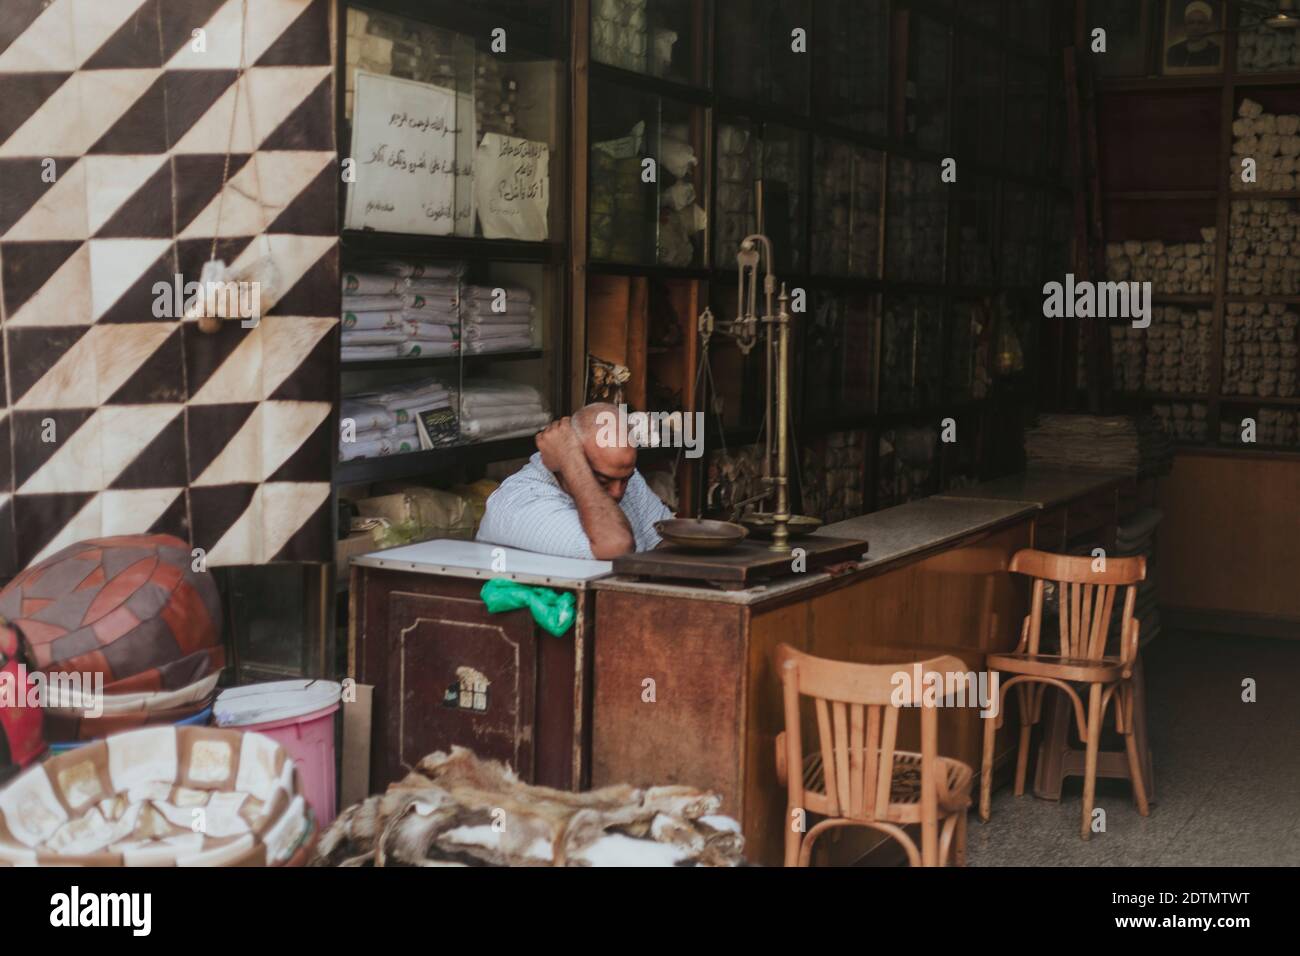 Cairo souk, Egypt Stock Photo